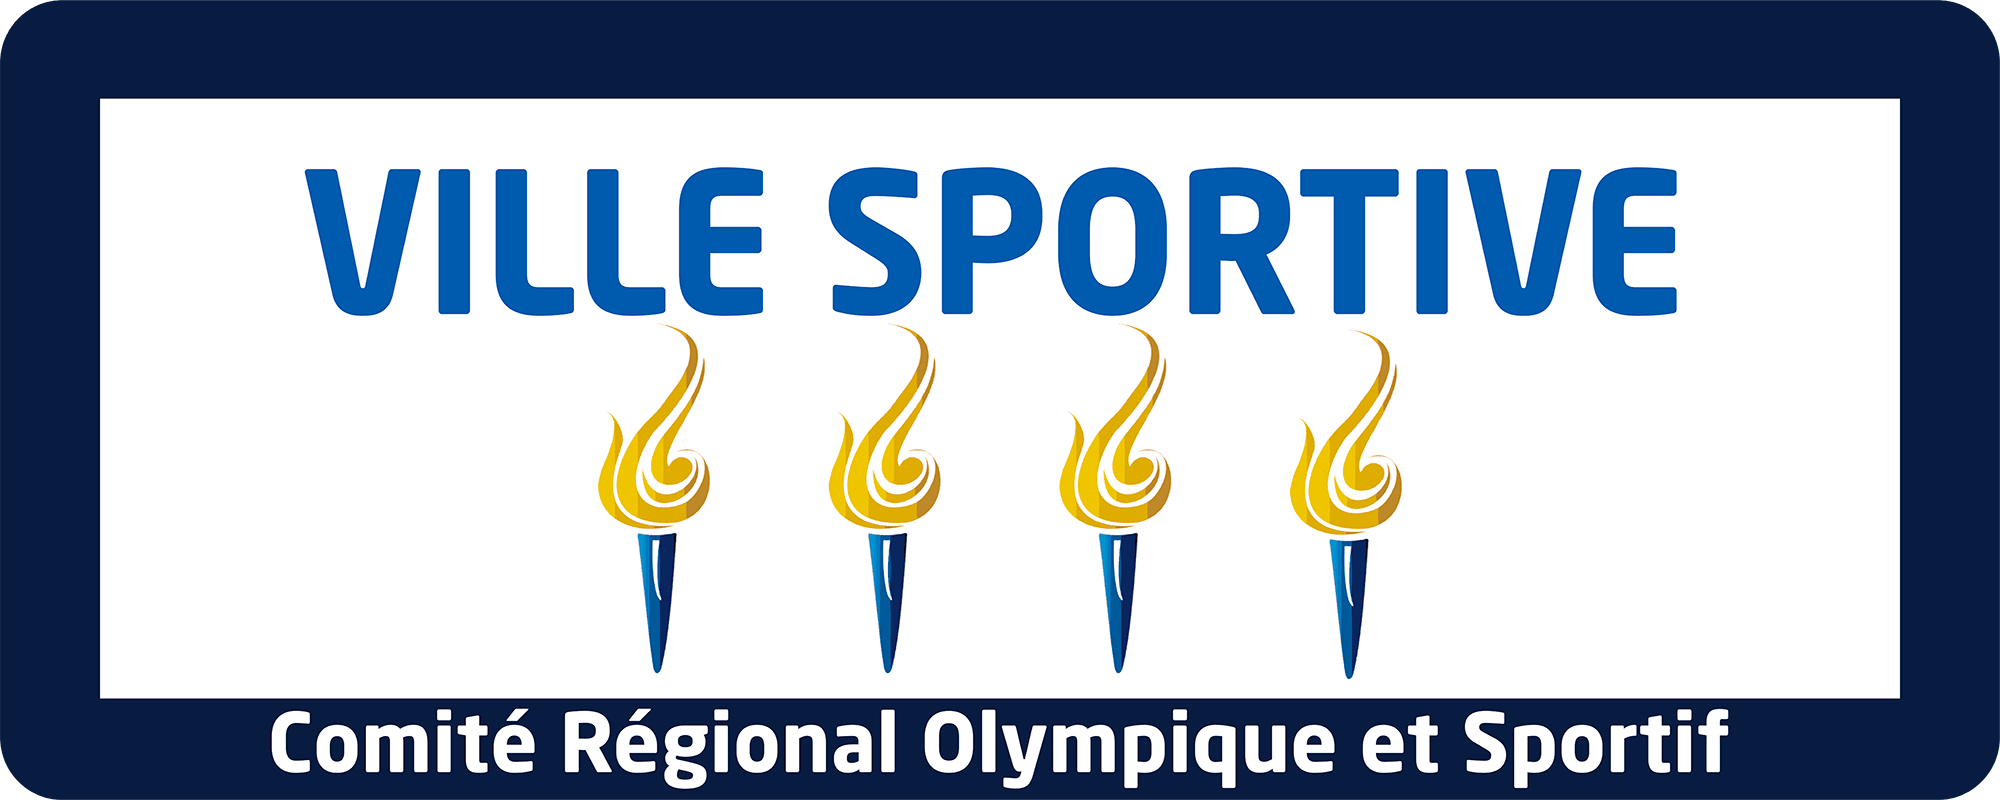 panneau comité régional olympique et sportif